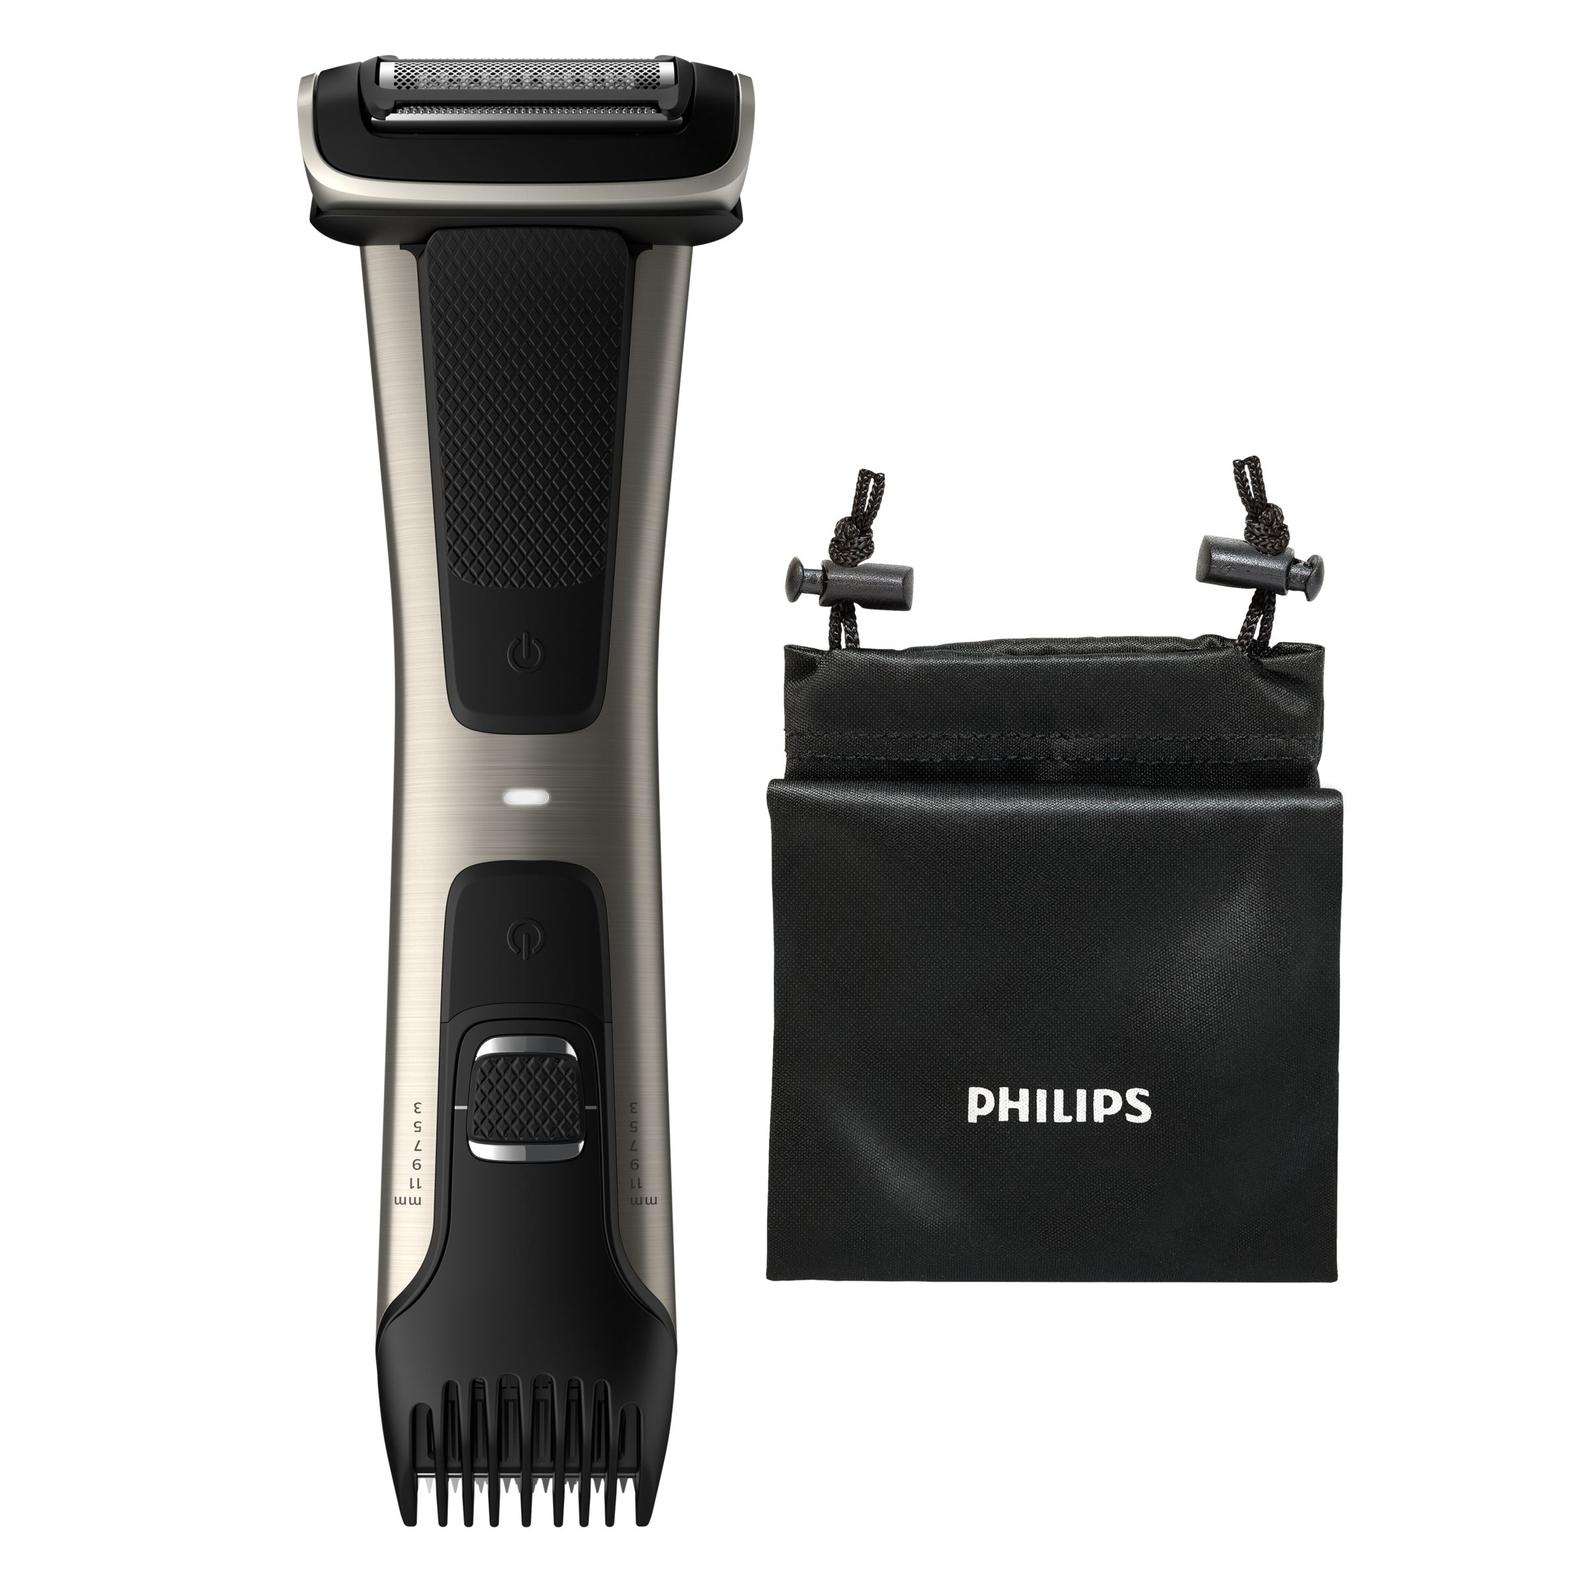 Offerta per Philips - 7000 series Bodygroom Series 7000 BG7025/15 Rifinitore impermeabile per corpo e inguine a 79,9€ in Comet